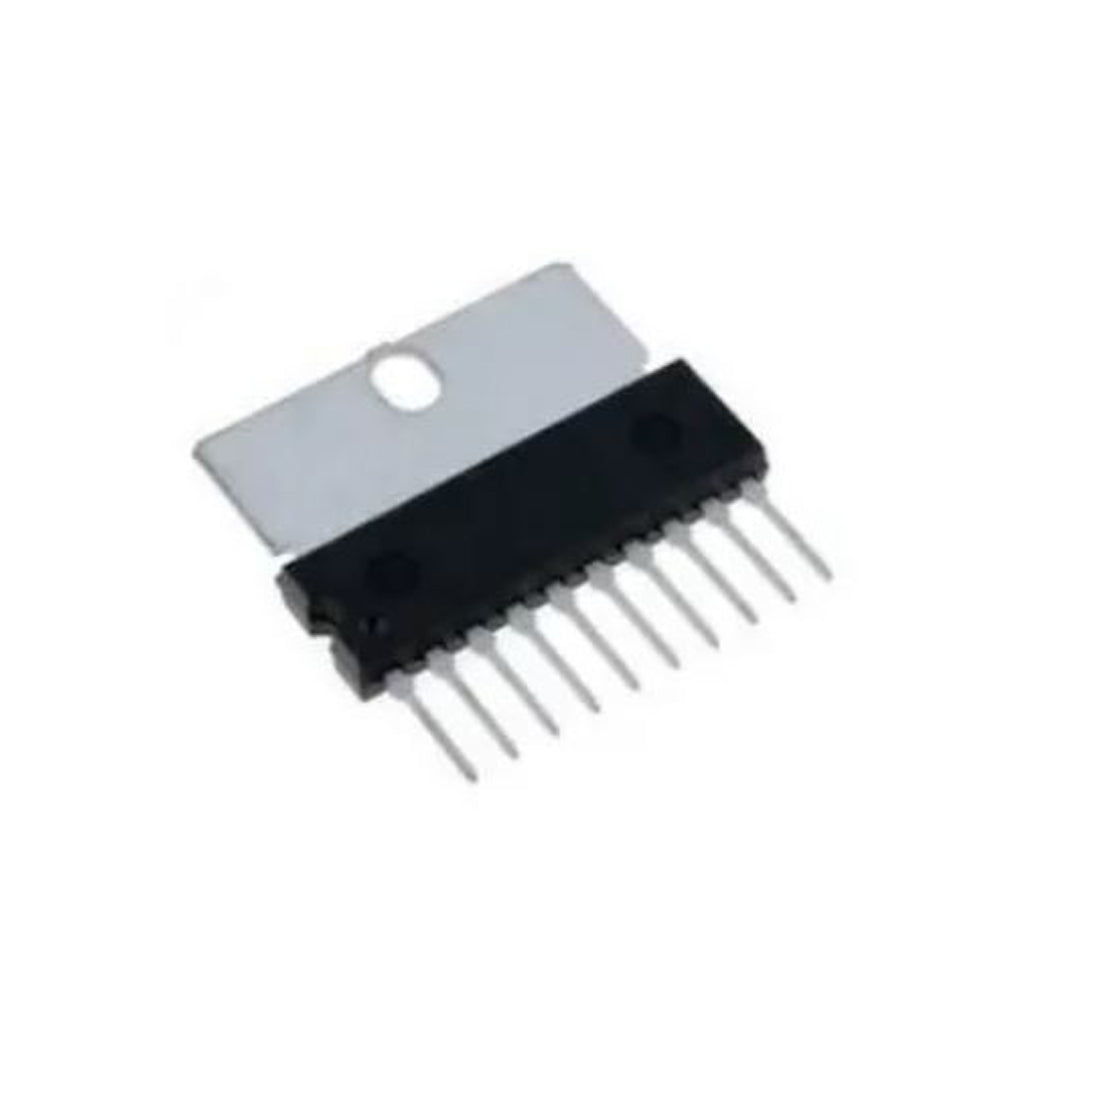 LA6510 circuito integrato, componente elettronico, transistor, 10 contatti